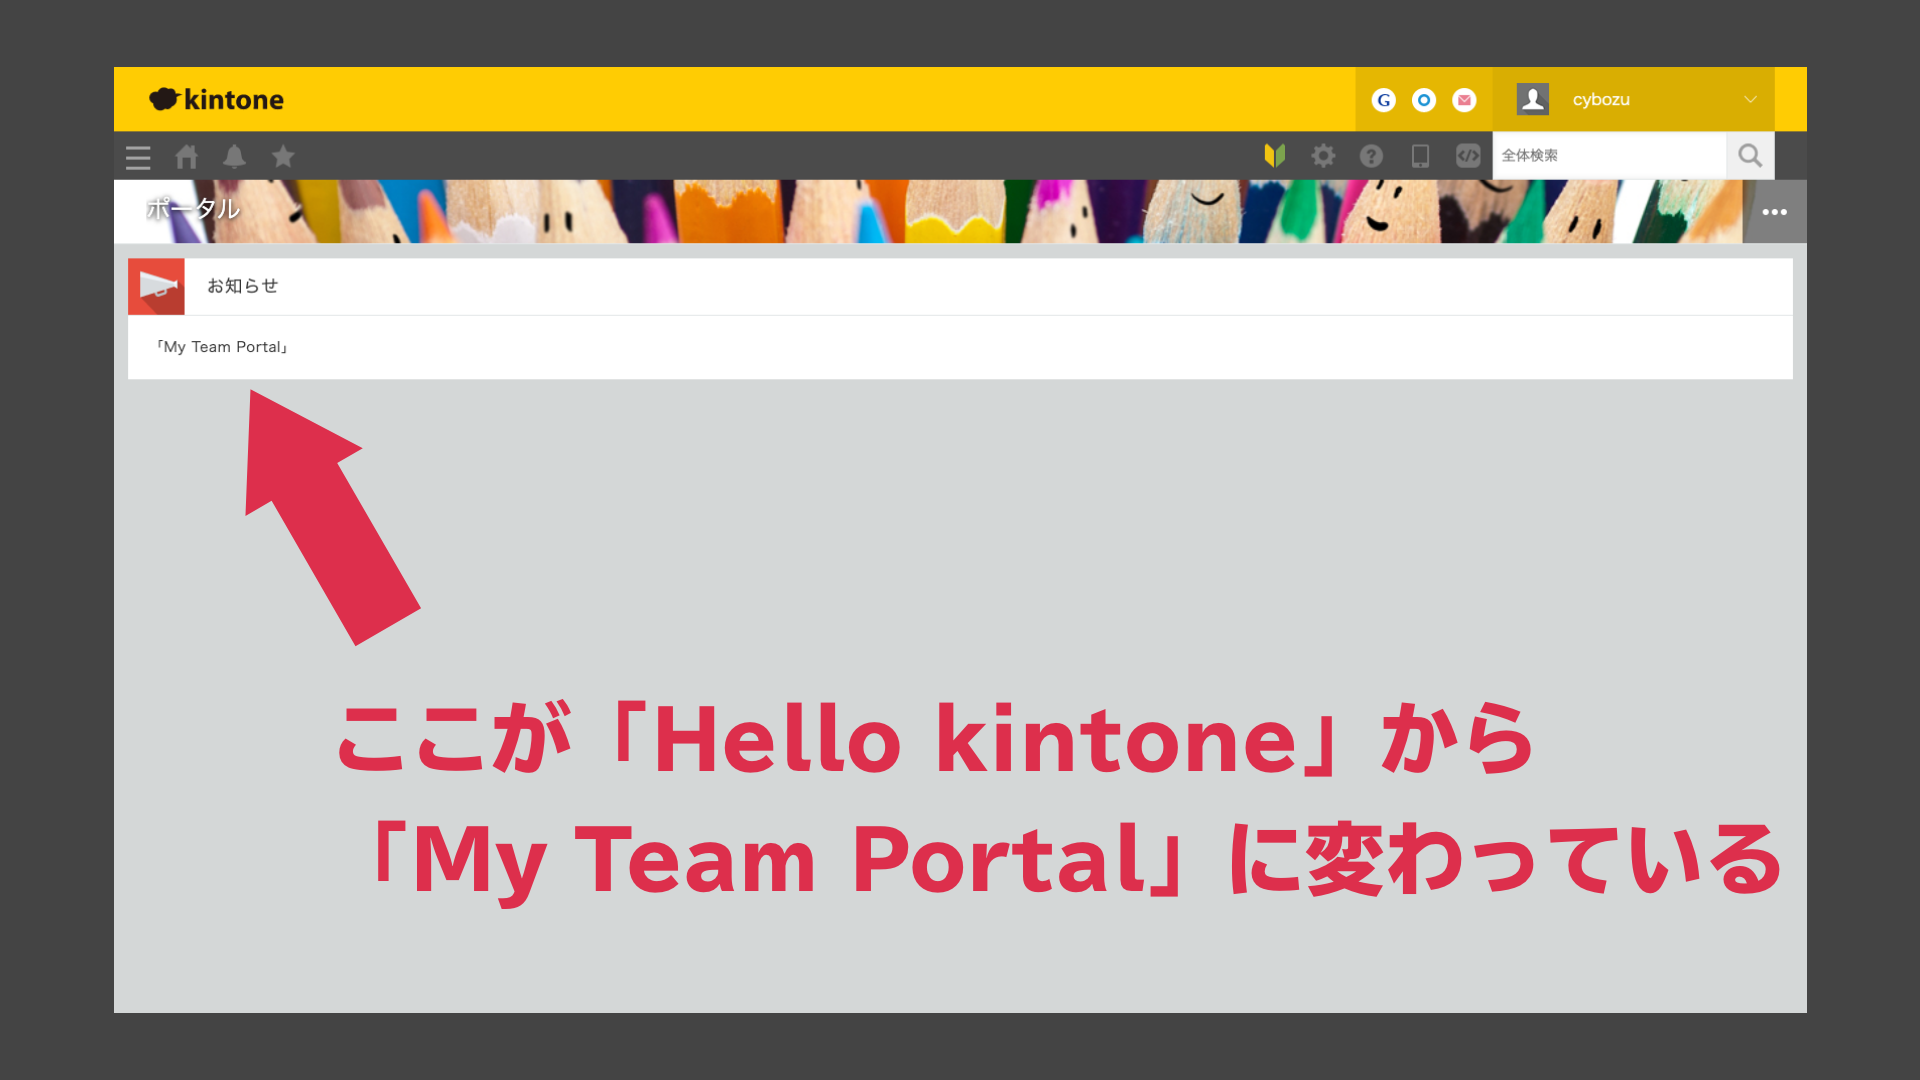 お知らせというウィジェットの中が「Hello kintone」から「My Team Portal」に変わっている